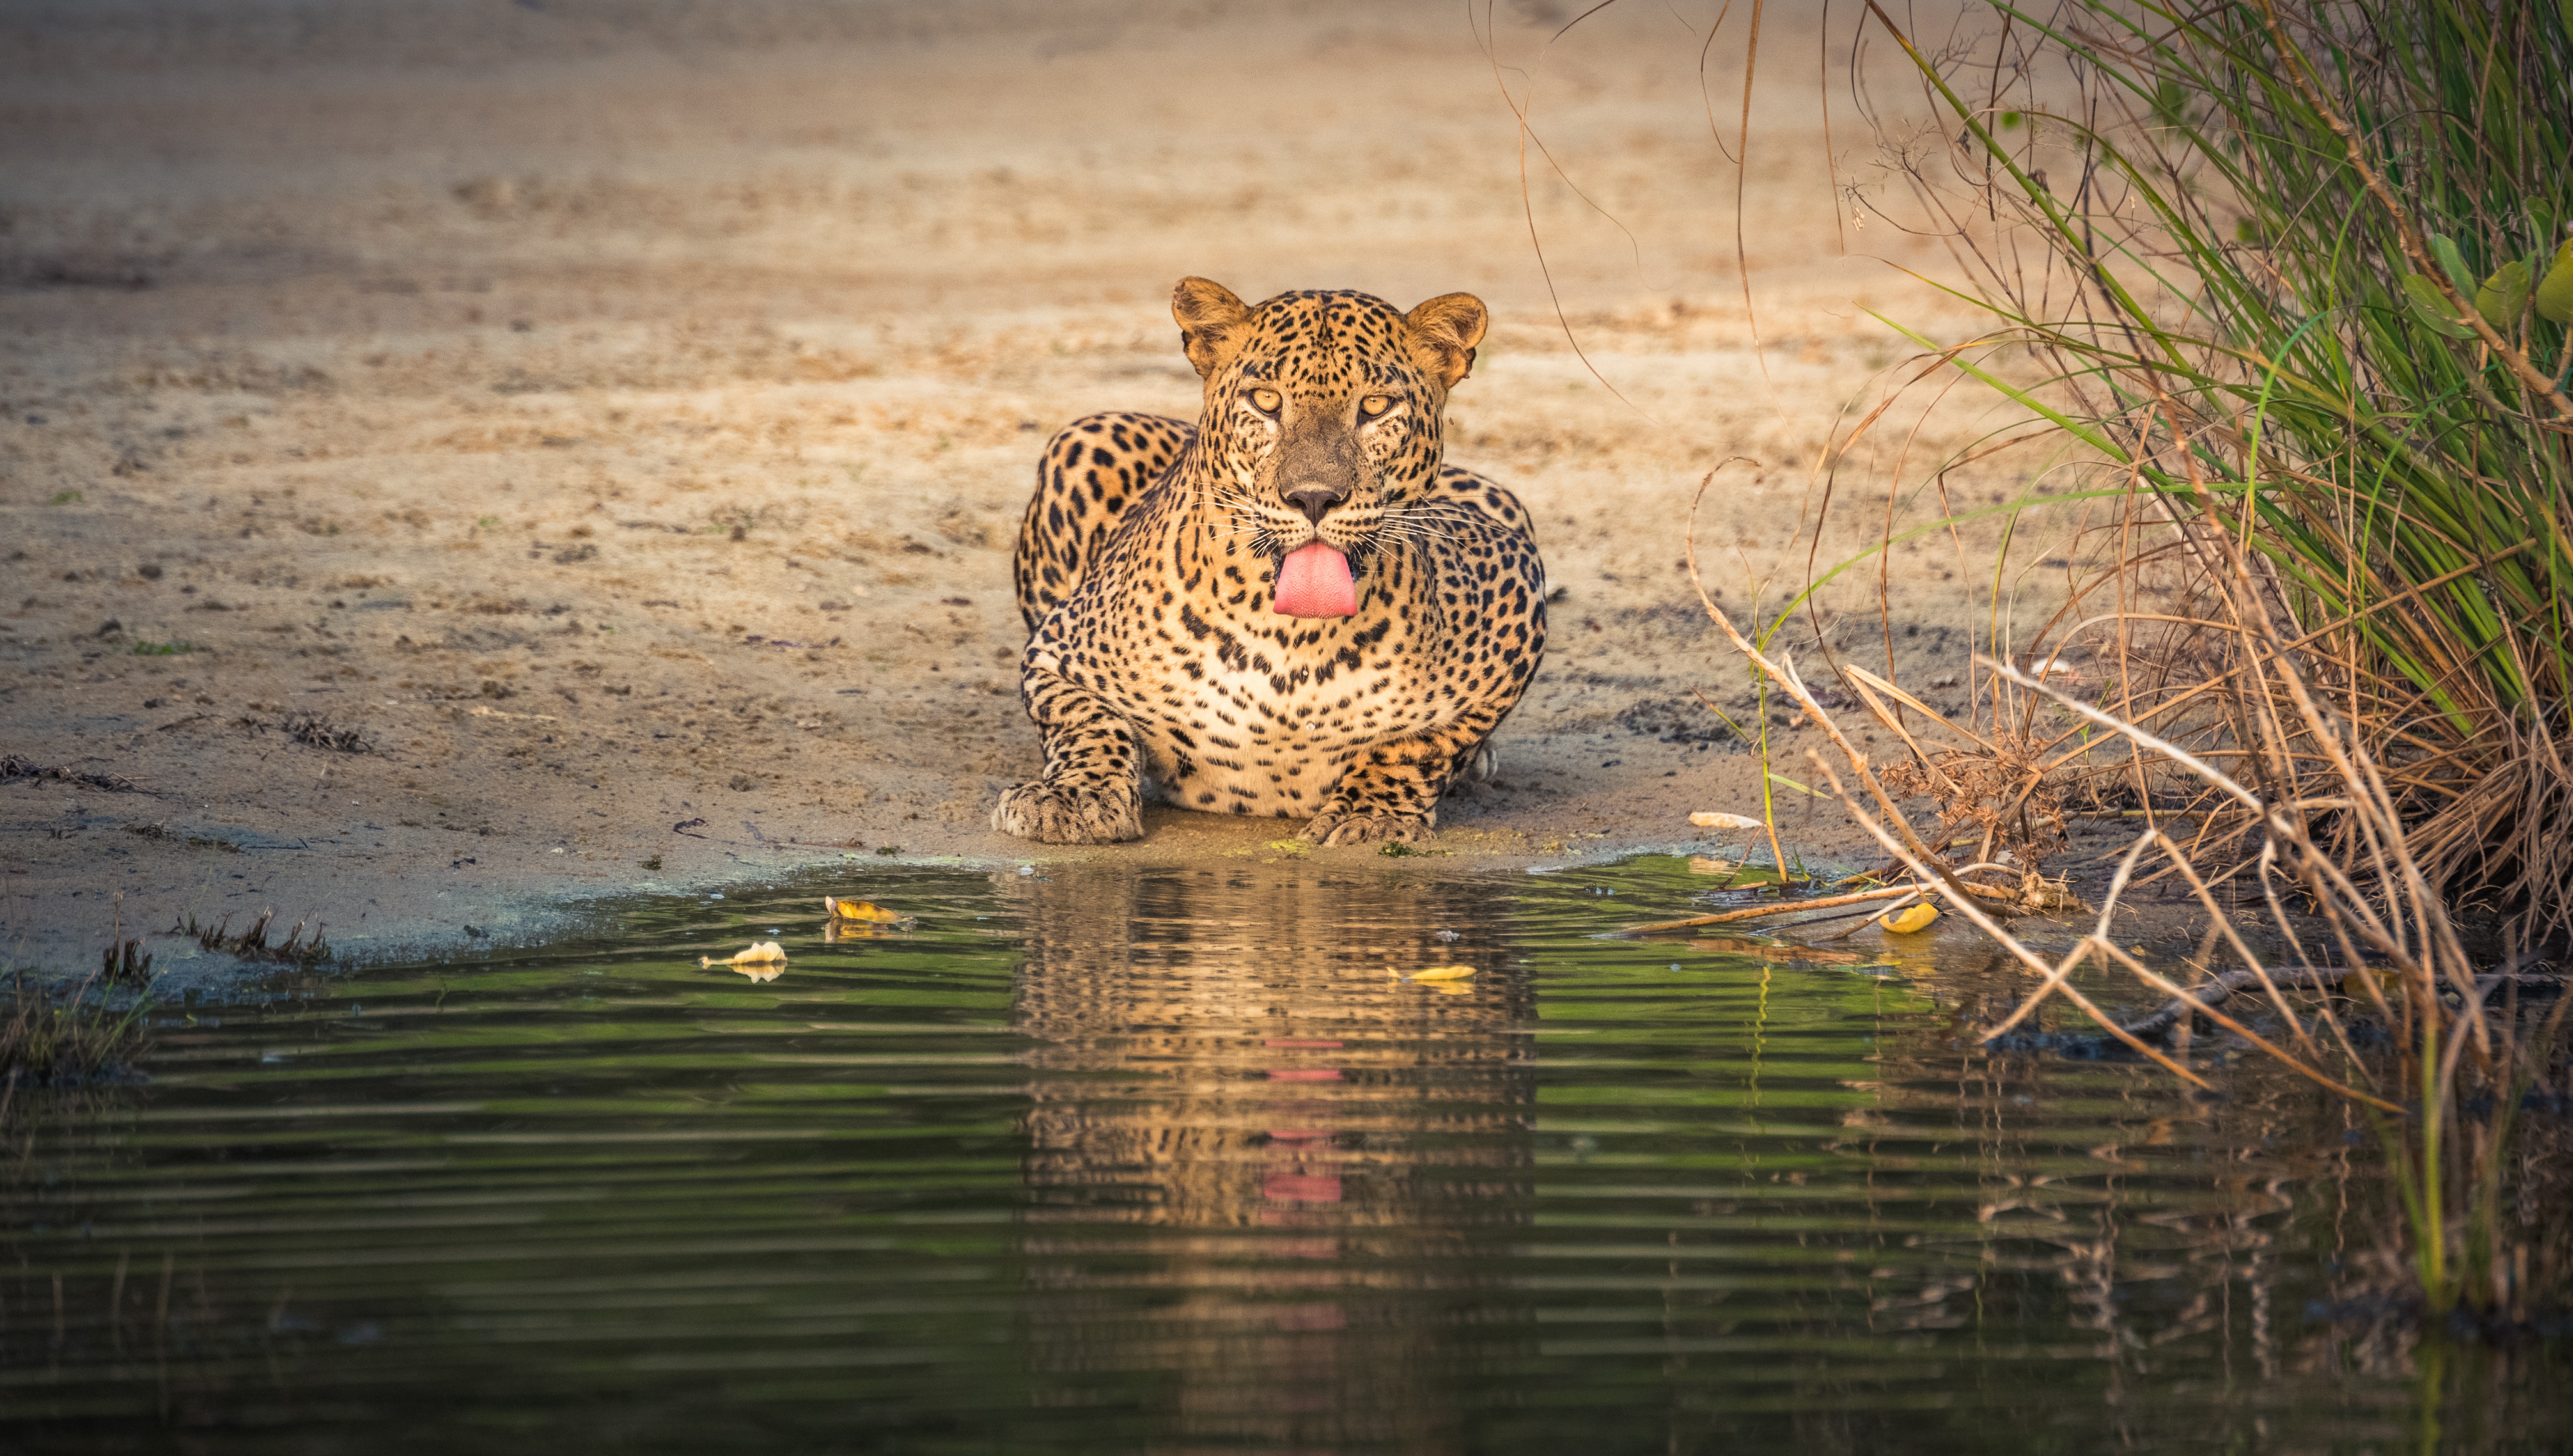 A leopard drinking water in Wilpattu.